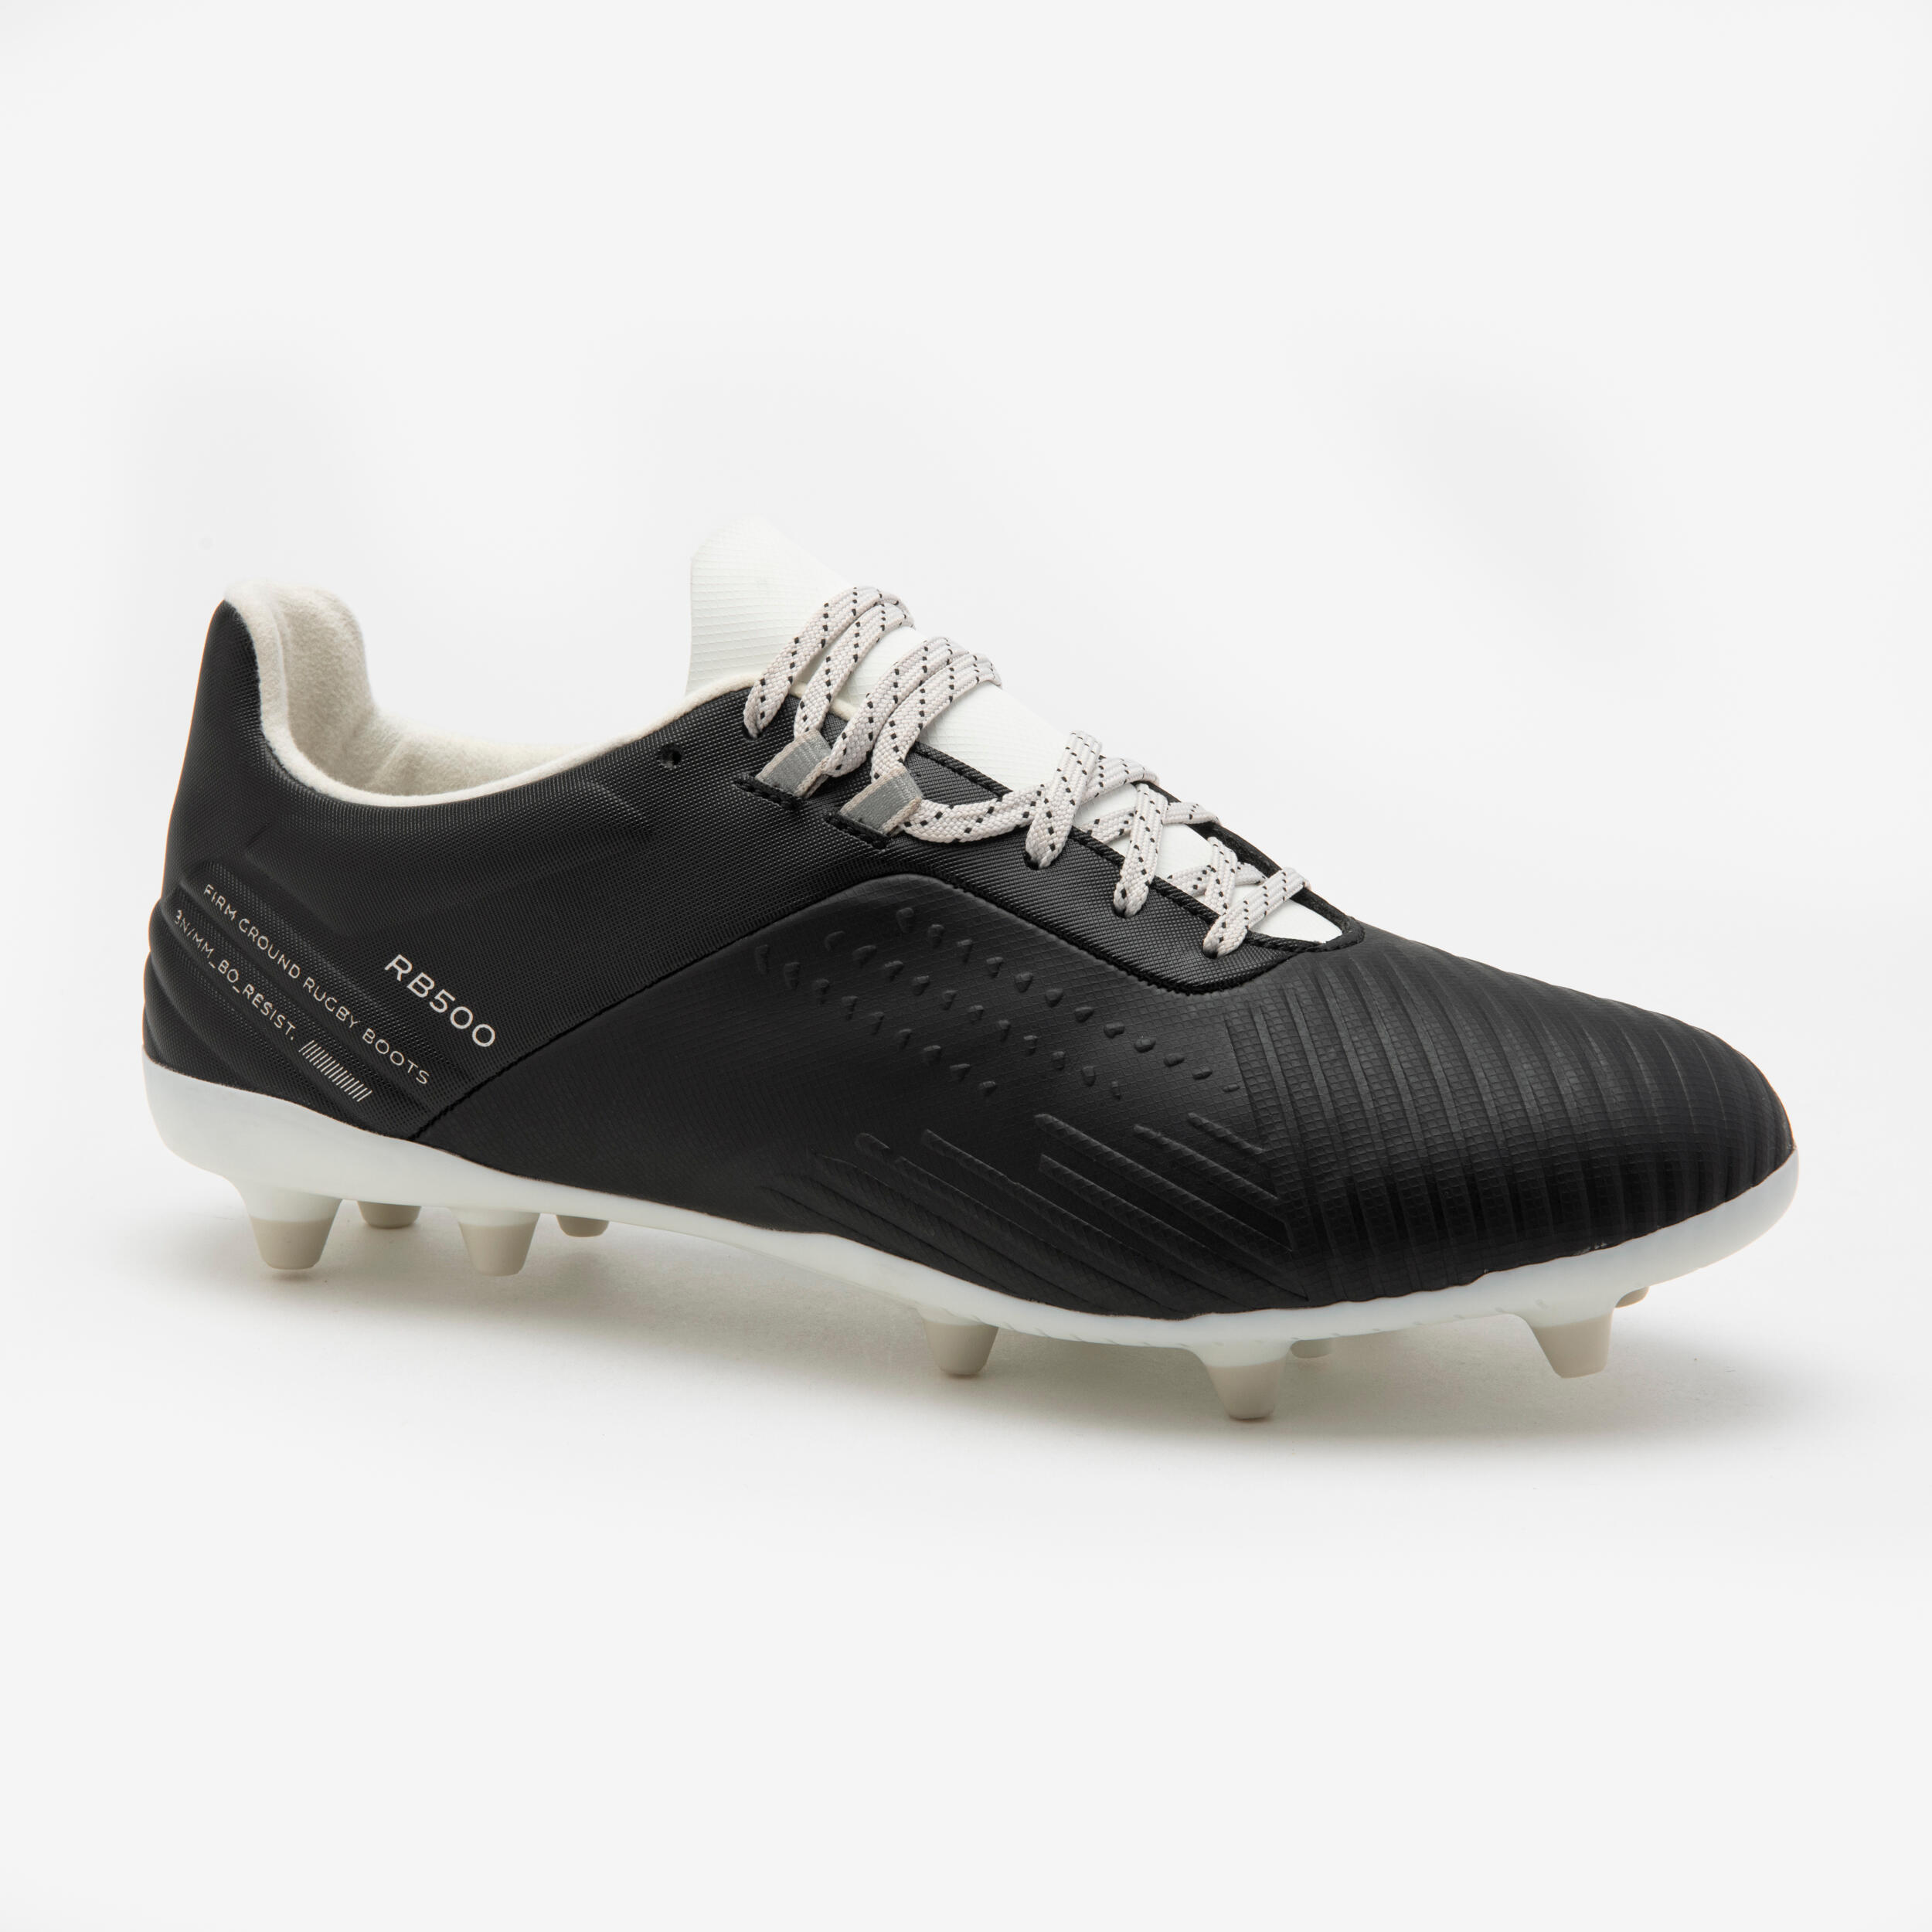 chaussure de rugby adulte - advance r500 fg noir - offload